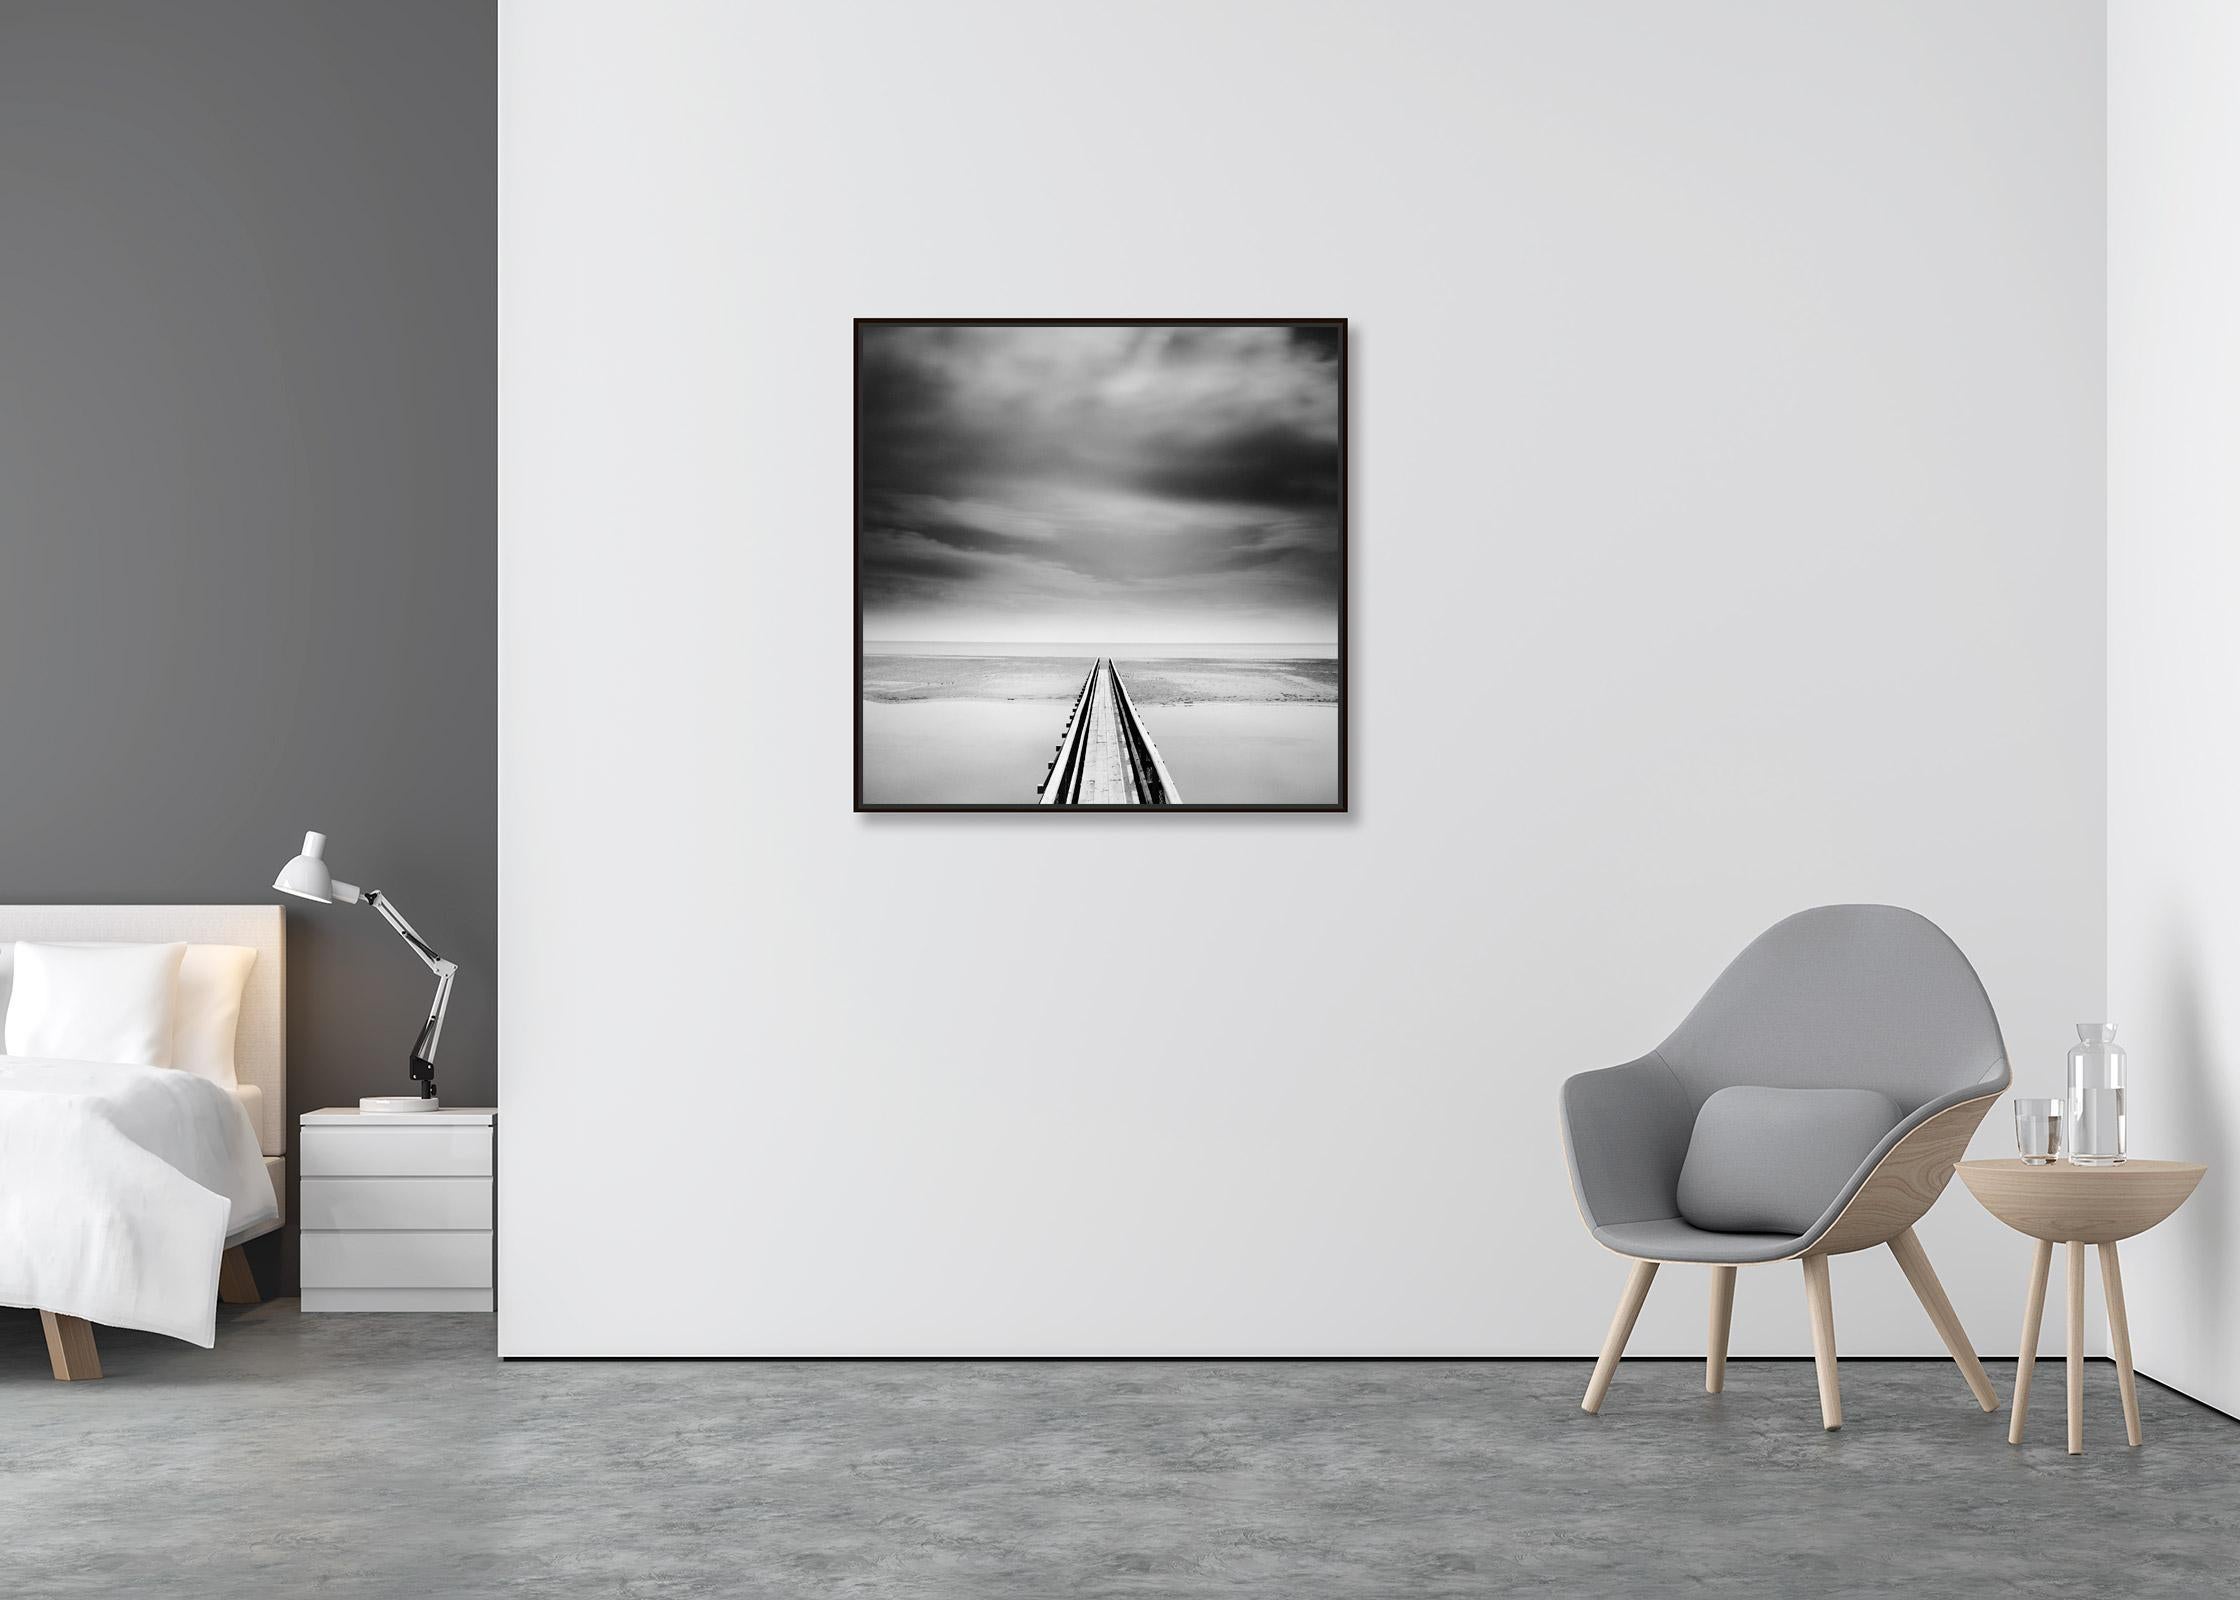 Über die Brücke, Irland, minimalistische Schwarz-Weiß-Landschaftsfotografie (Zeitgenössisch), Photograph, von Gerald Berghammer